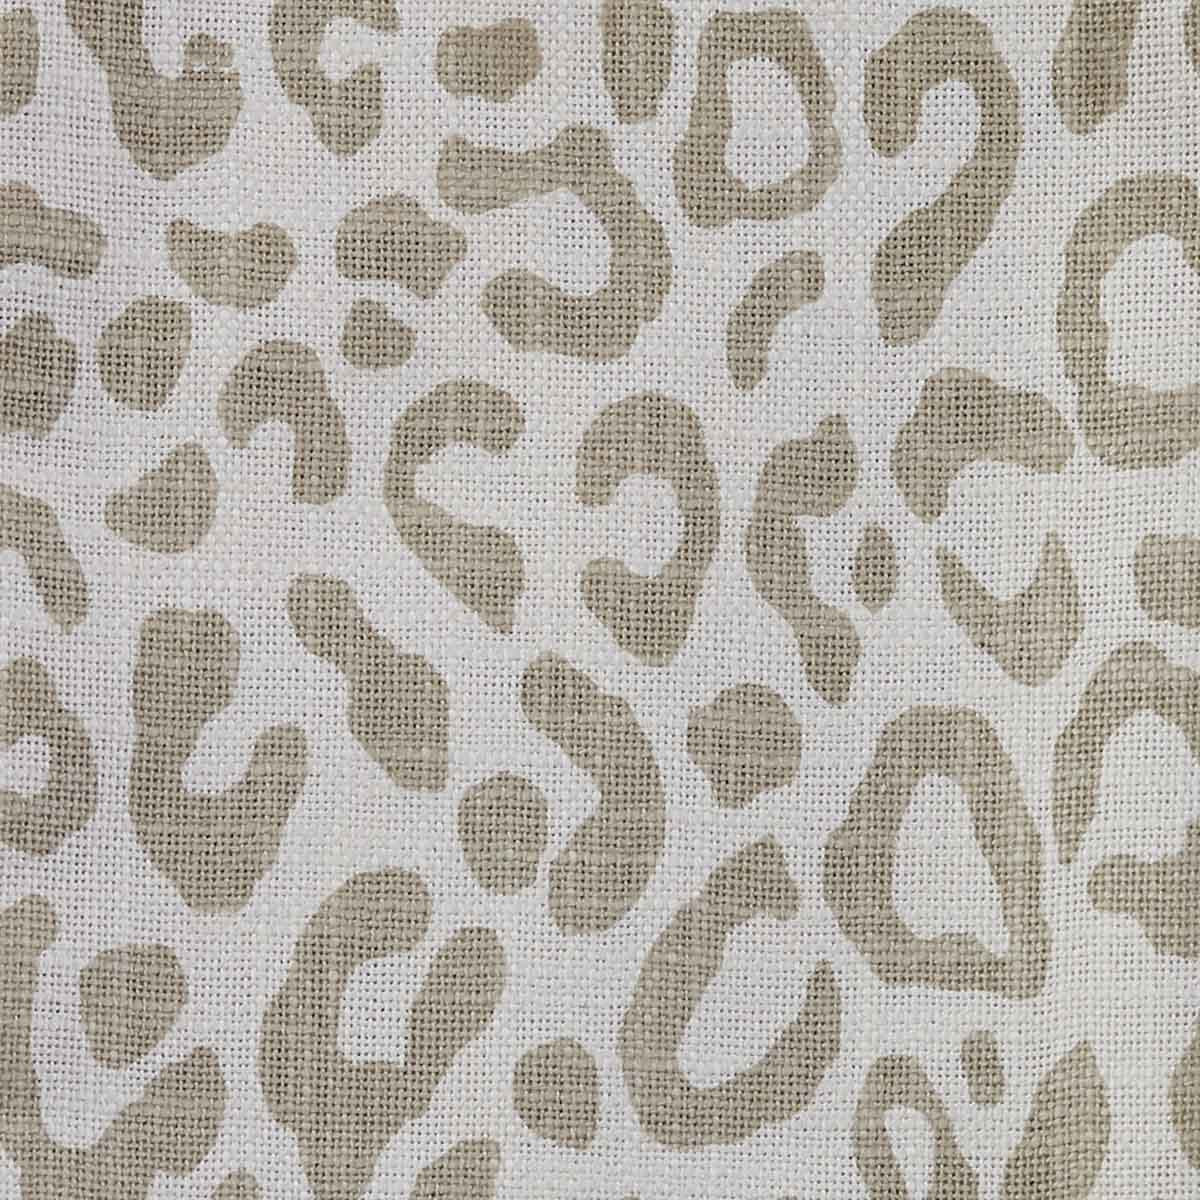 Safari Leopard Printed Towel - Natural Set of 2  Park Designs